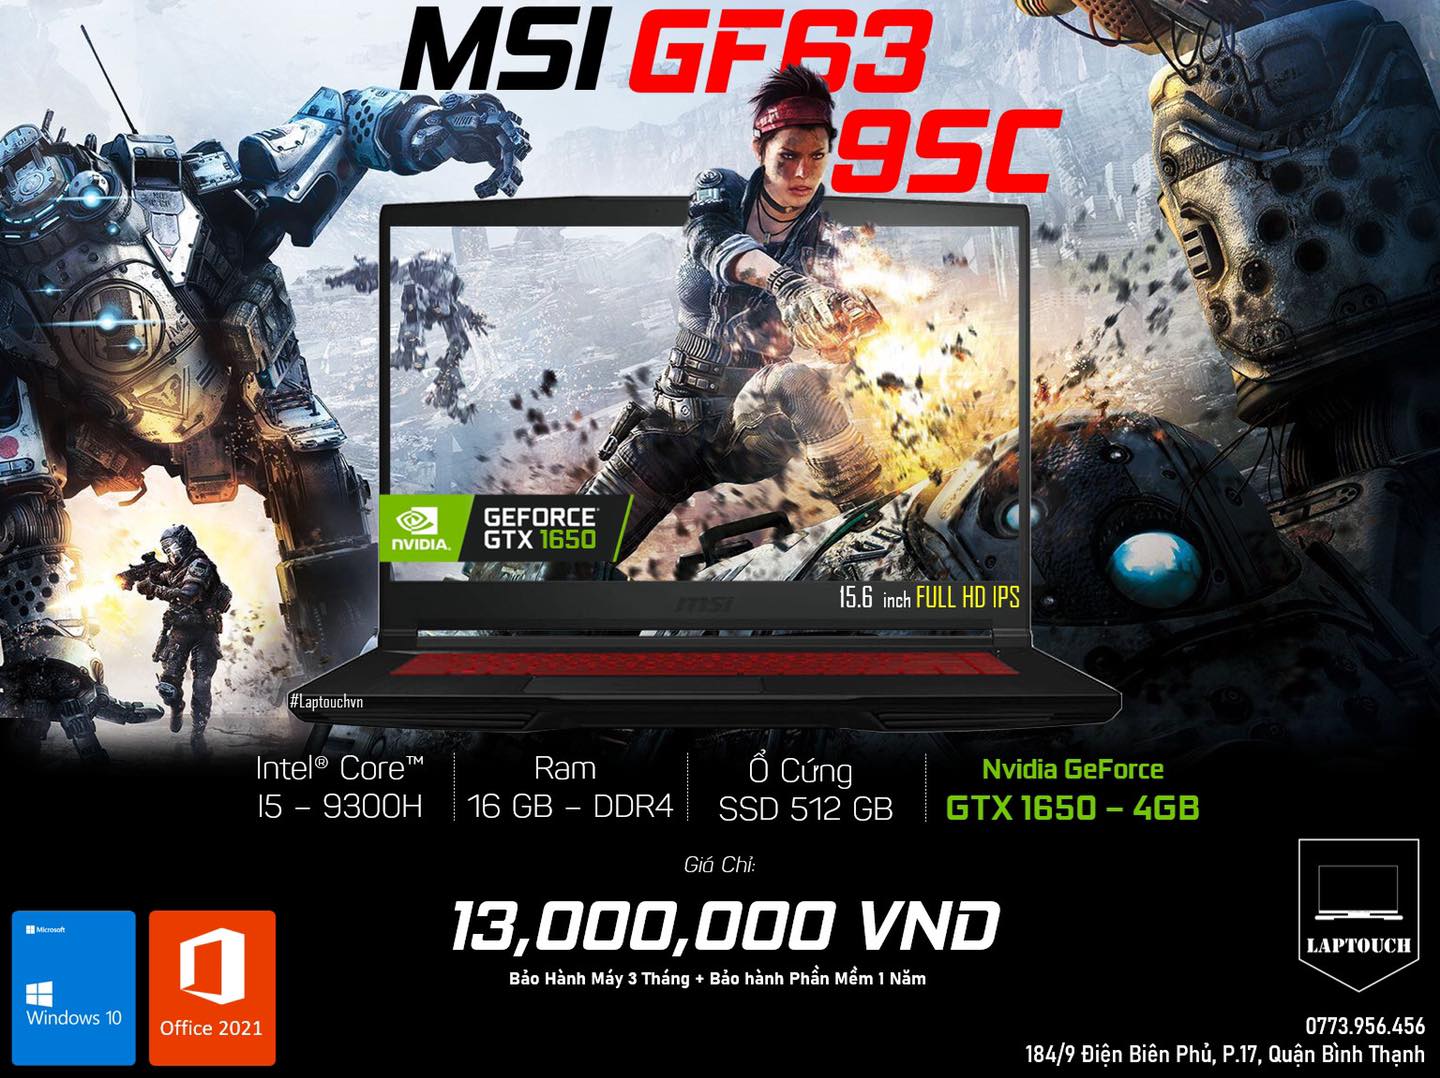 MSI GF63 - 9SC